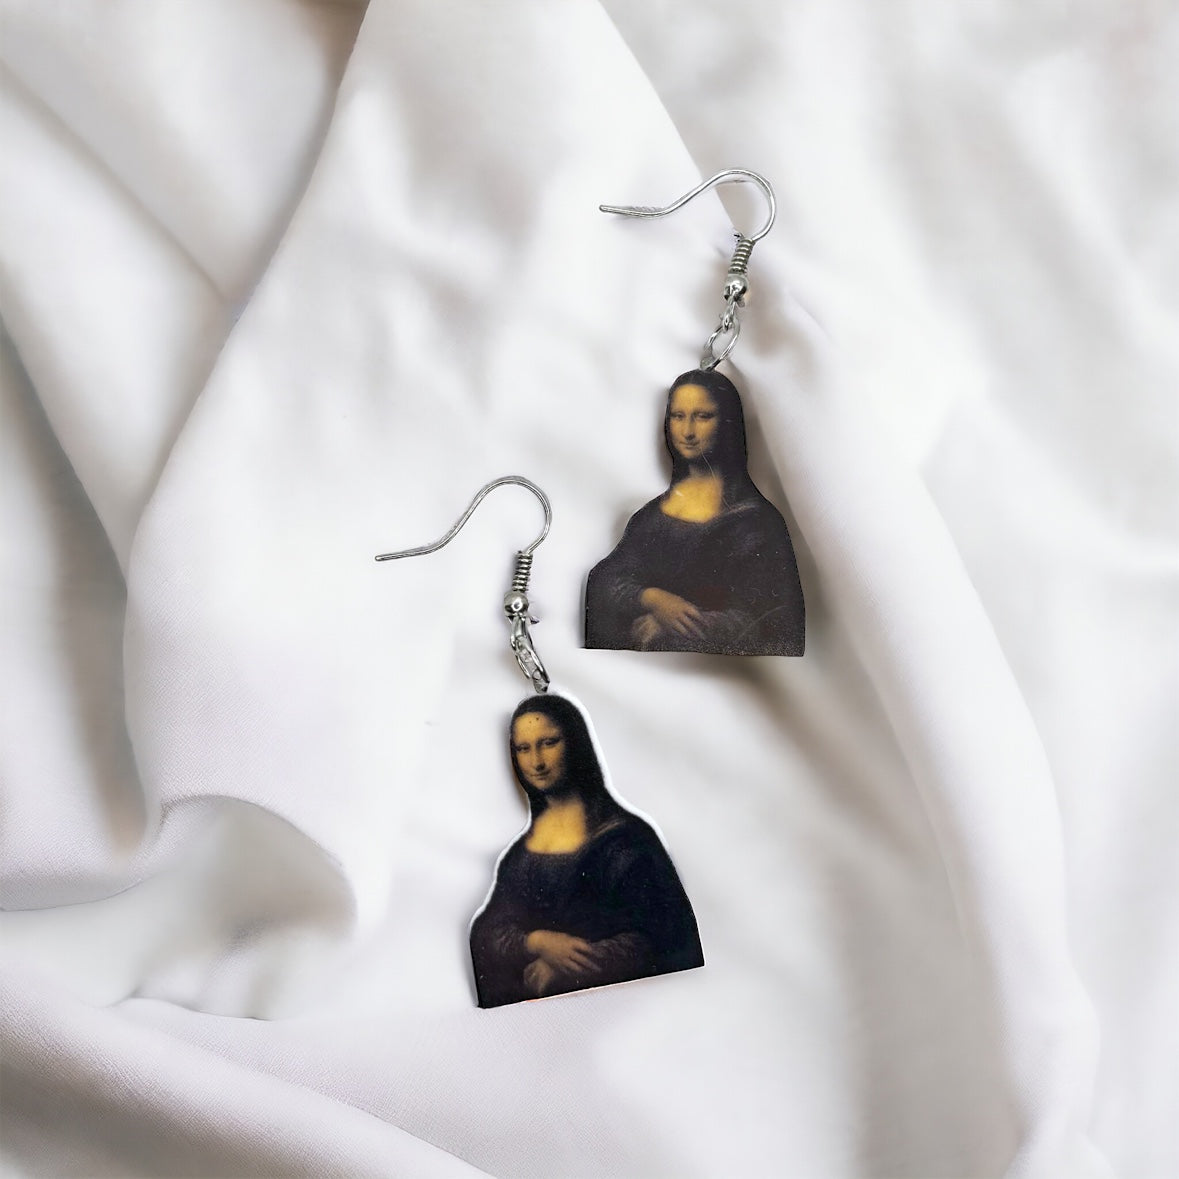 Mona Lisa Earrings - Art Teacher Earrings, Artist, Art Earrings